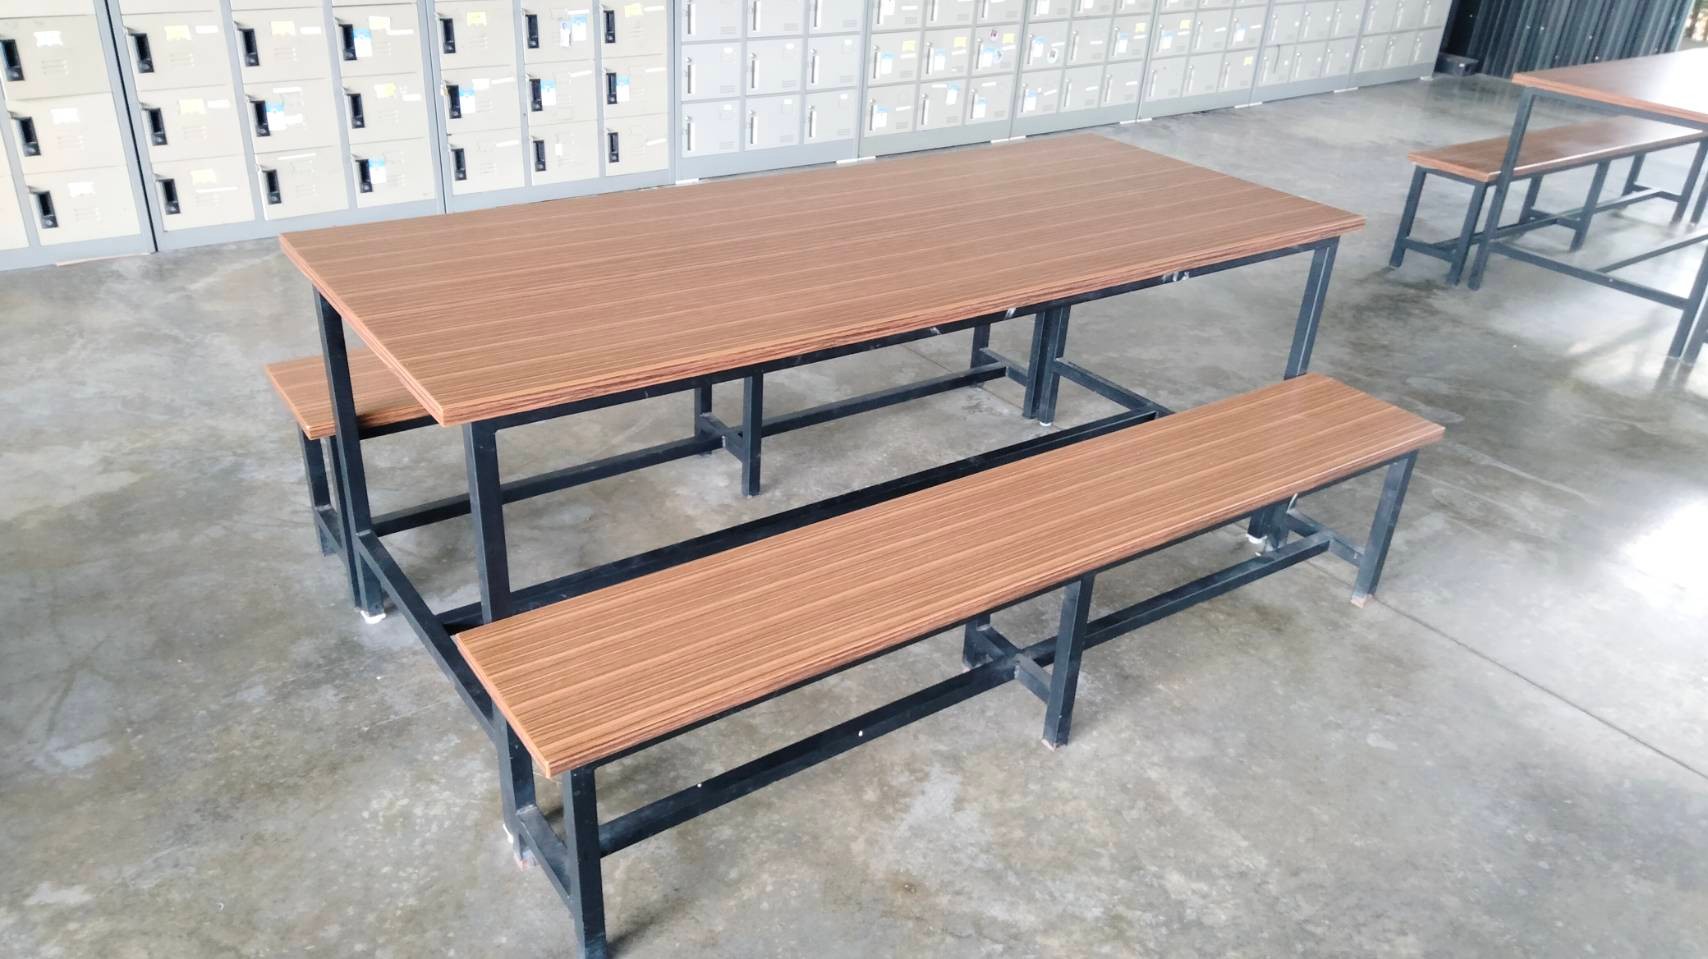 69063::DF-02-TABLE-BENCH::ชุดโต๊ะโรงอาหาร โต๊ะ ขนาด ก1829xล760xส750 มม. ม้านั่ง ขนาด ก1829xล300xส430 มม. ชุดโต๊ะอาหาร TOKAI